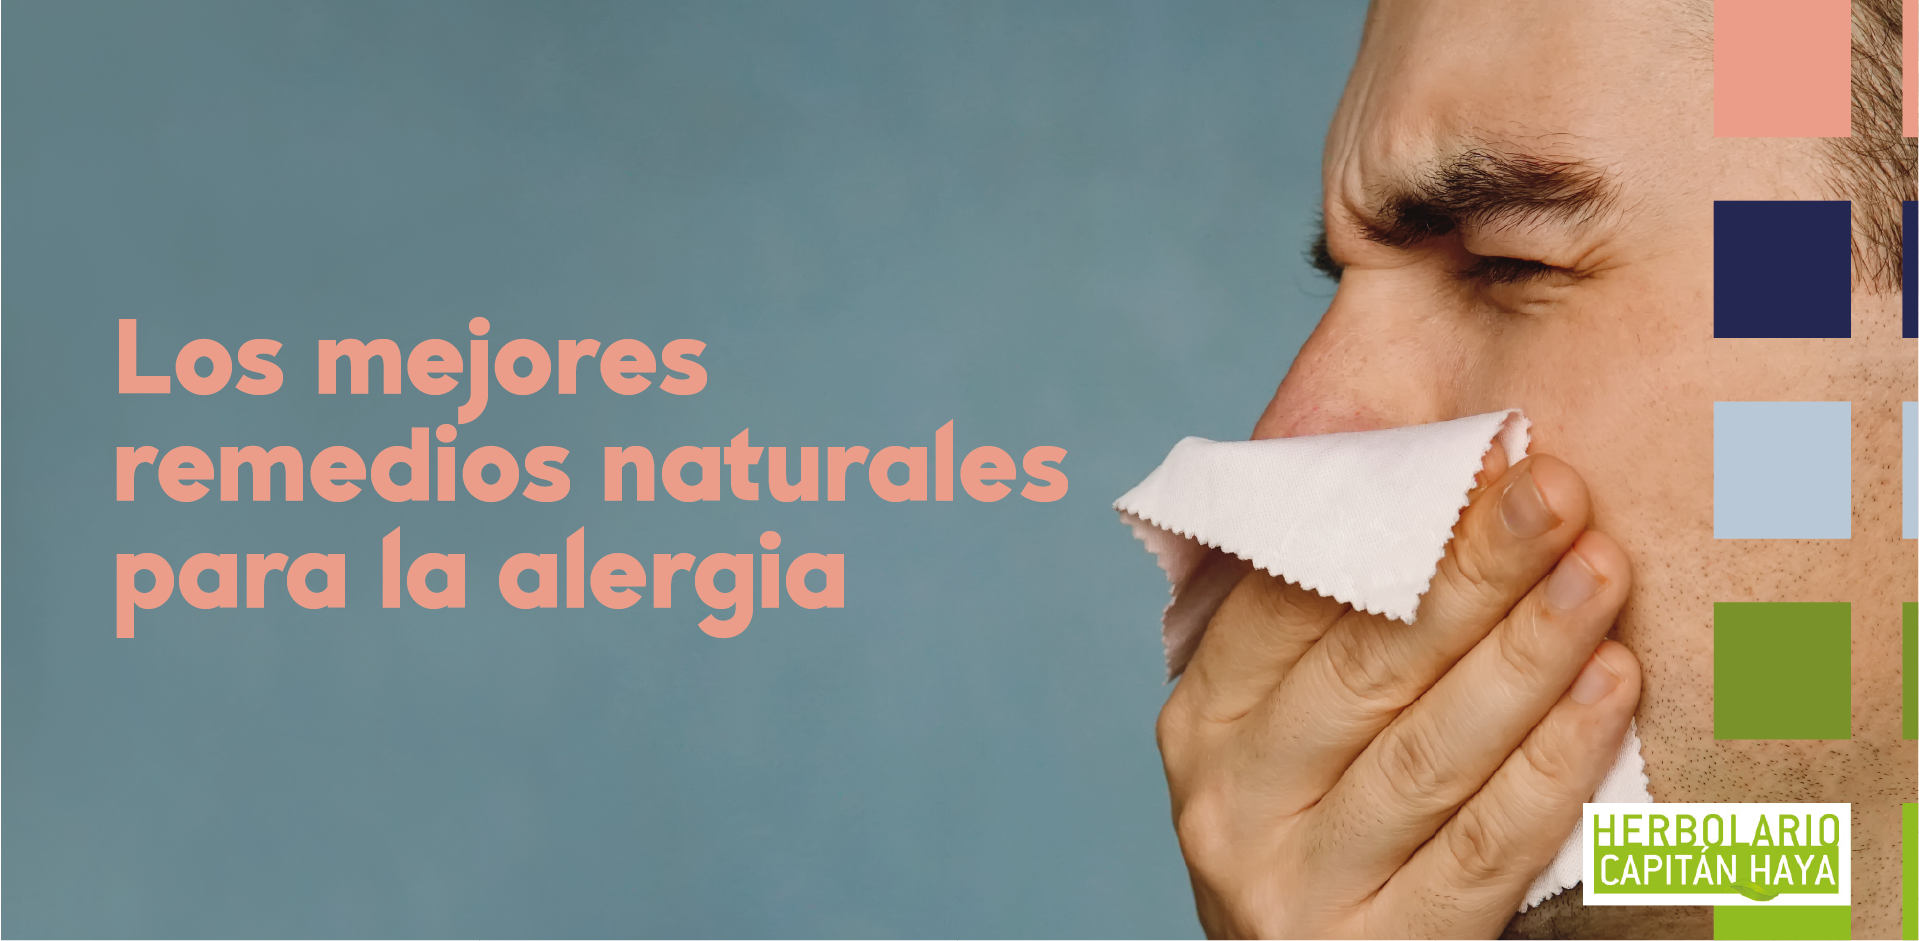 Los mejores remedios naturales para la alergia